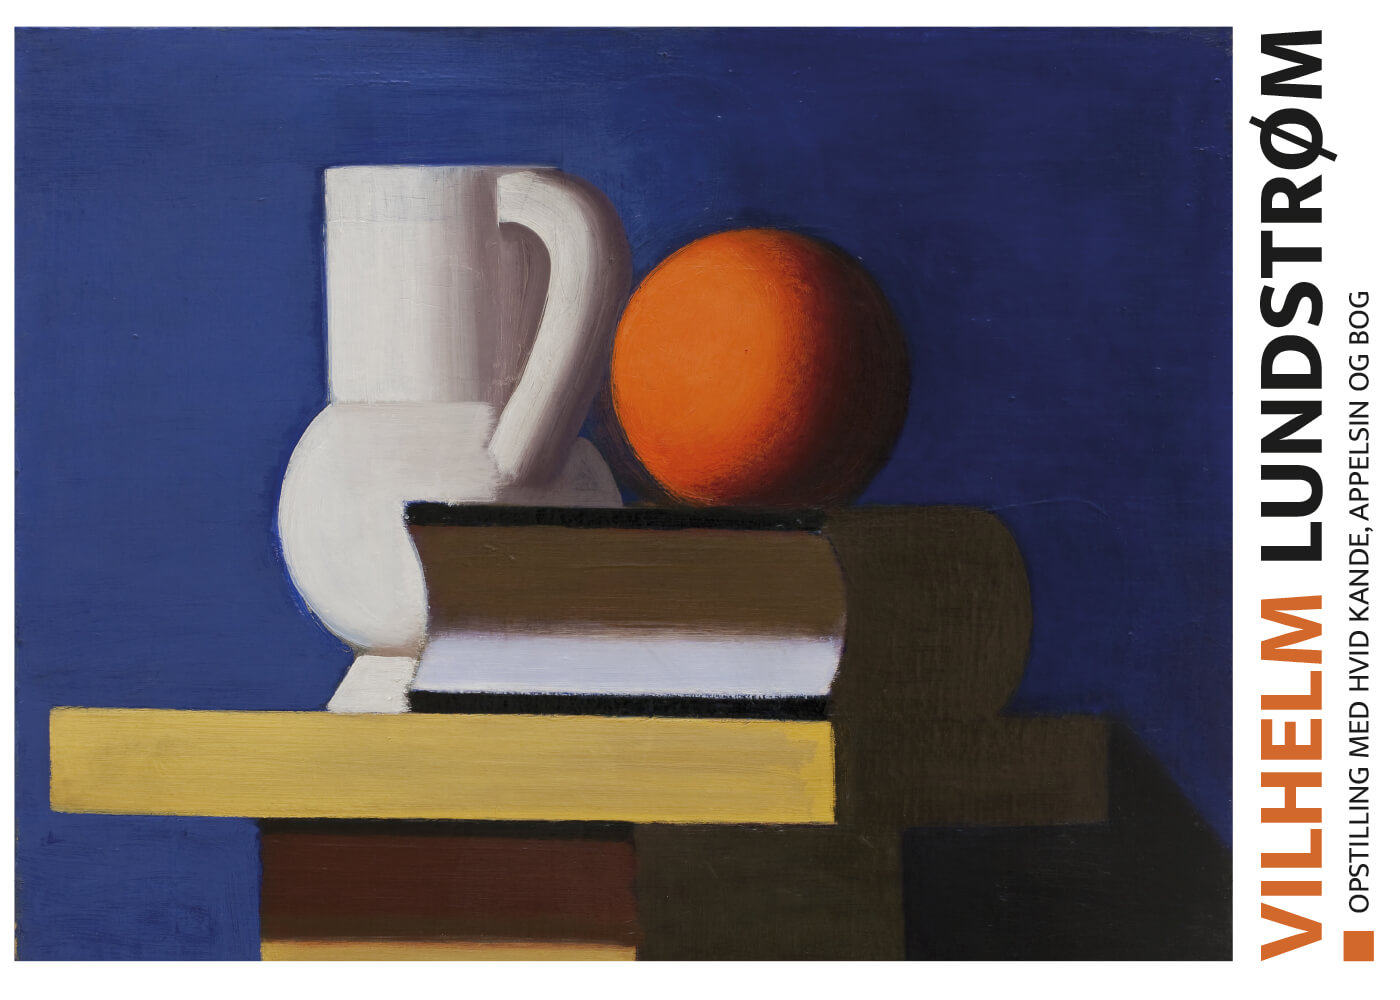 Billede af Opstilling med hvid kande, appelsin og bog - Vilhelm Lundstrøm museumsplakat